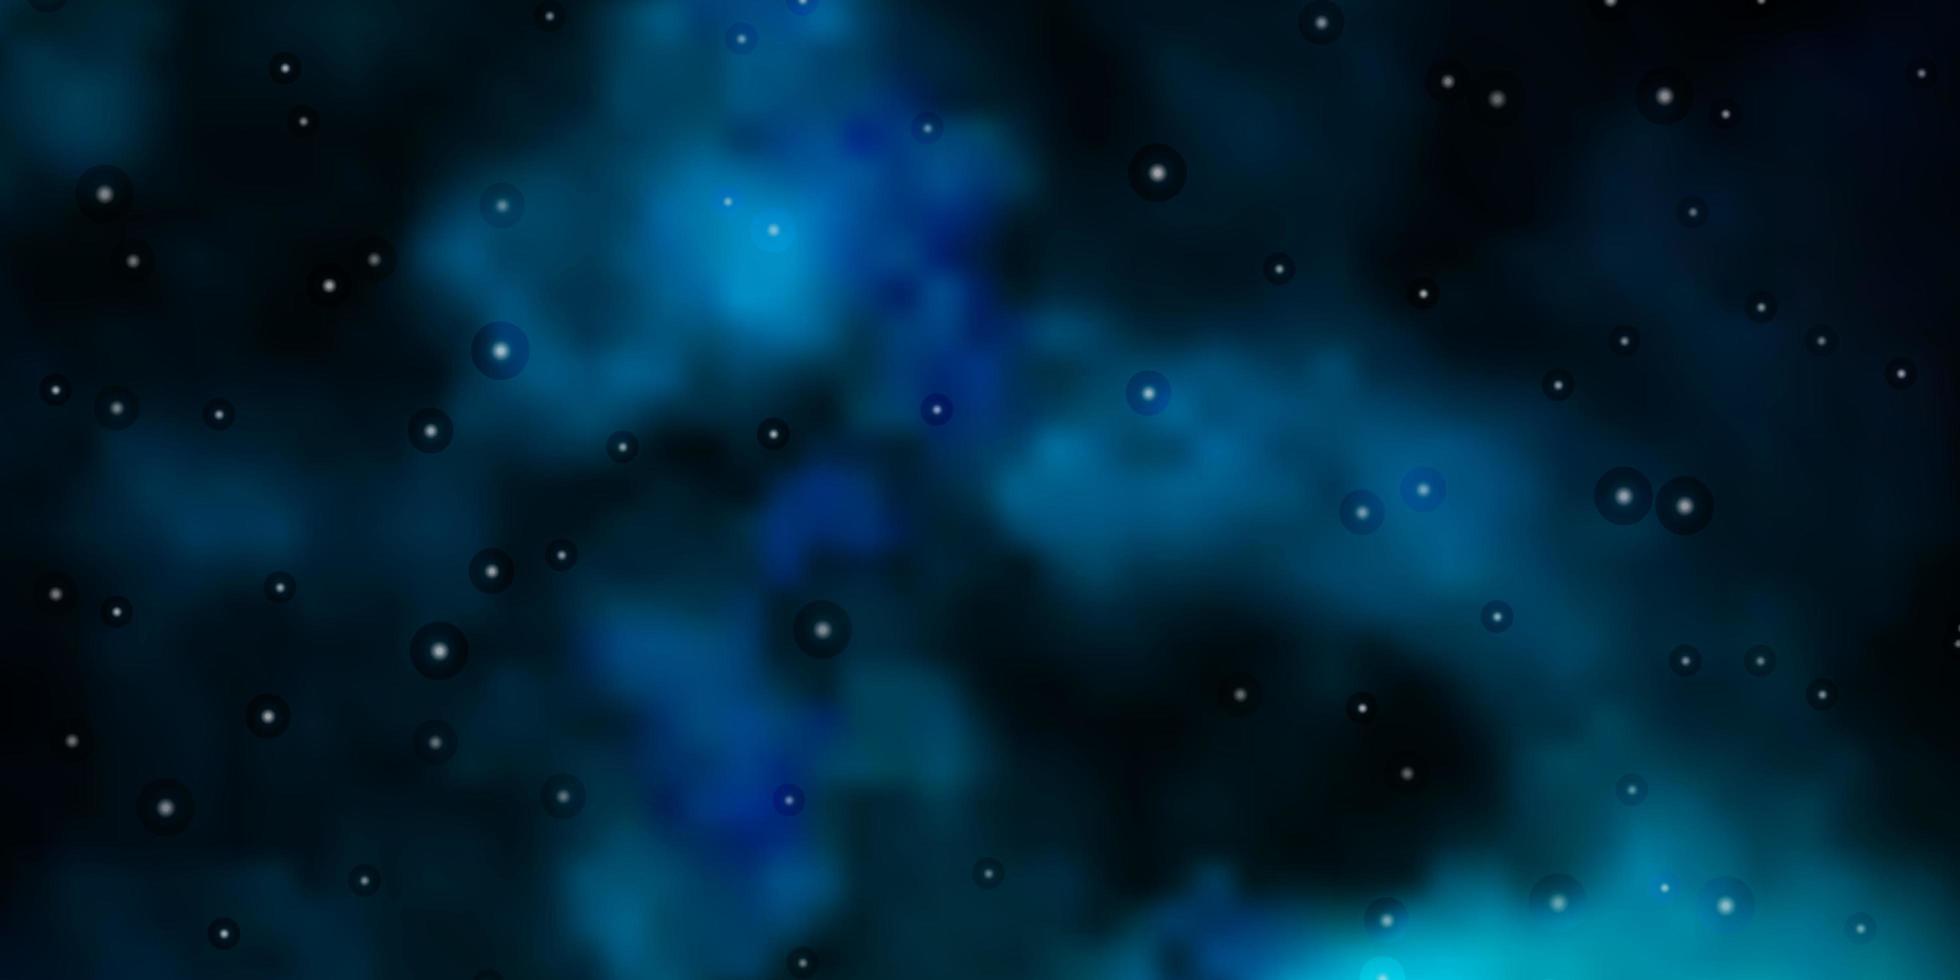 mörkblått, grönt vektormönster med abstrakta stjärnor. vektor